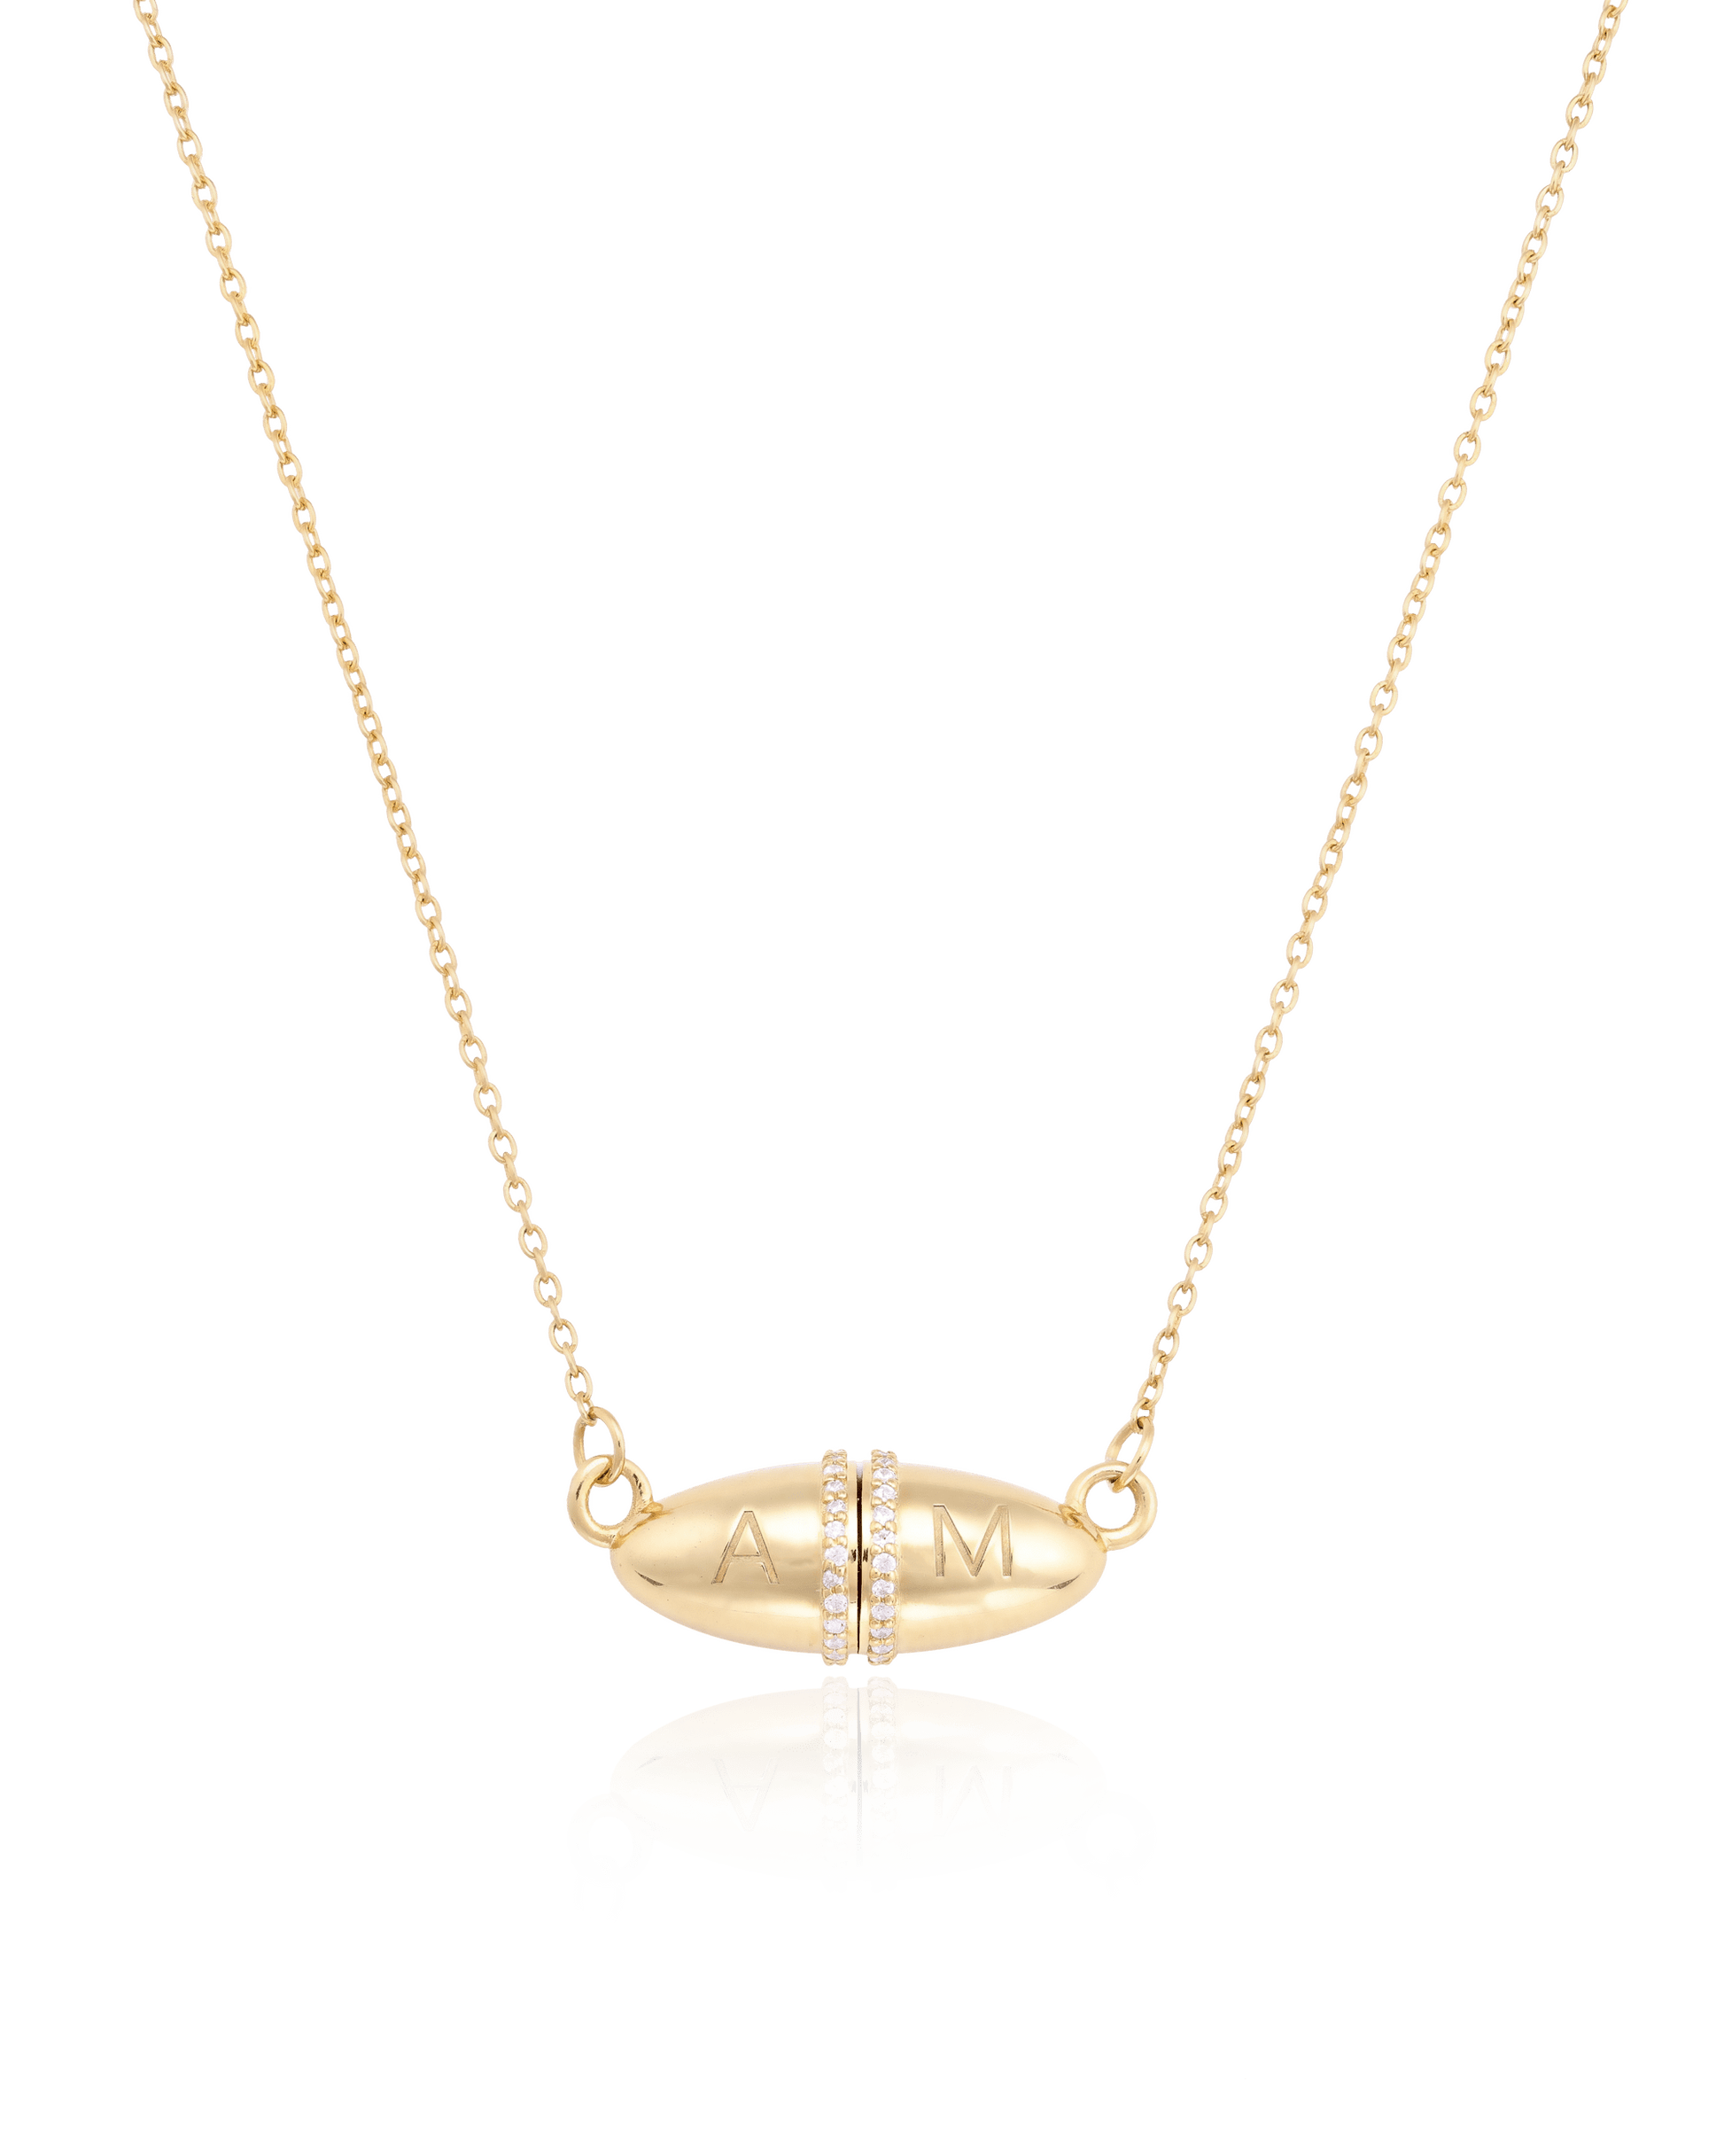 Fabergé Chain Necklace - 18K Rose Vermeil Necklaces magal-dev 